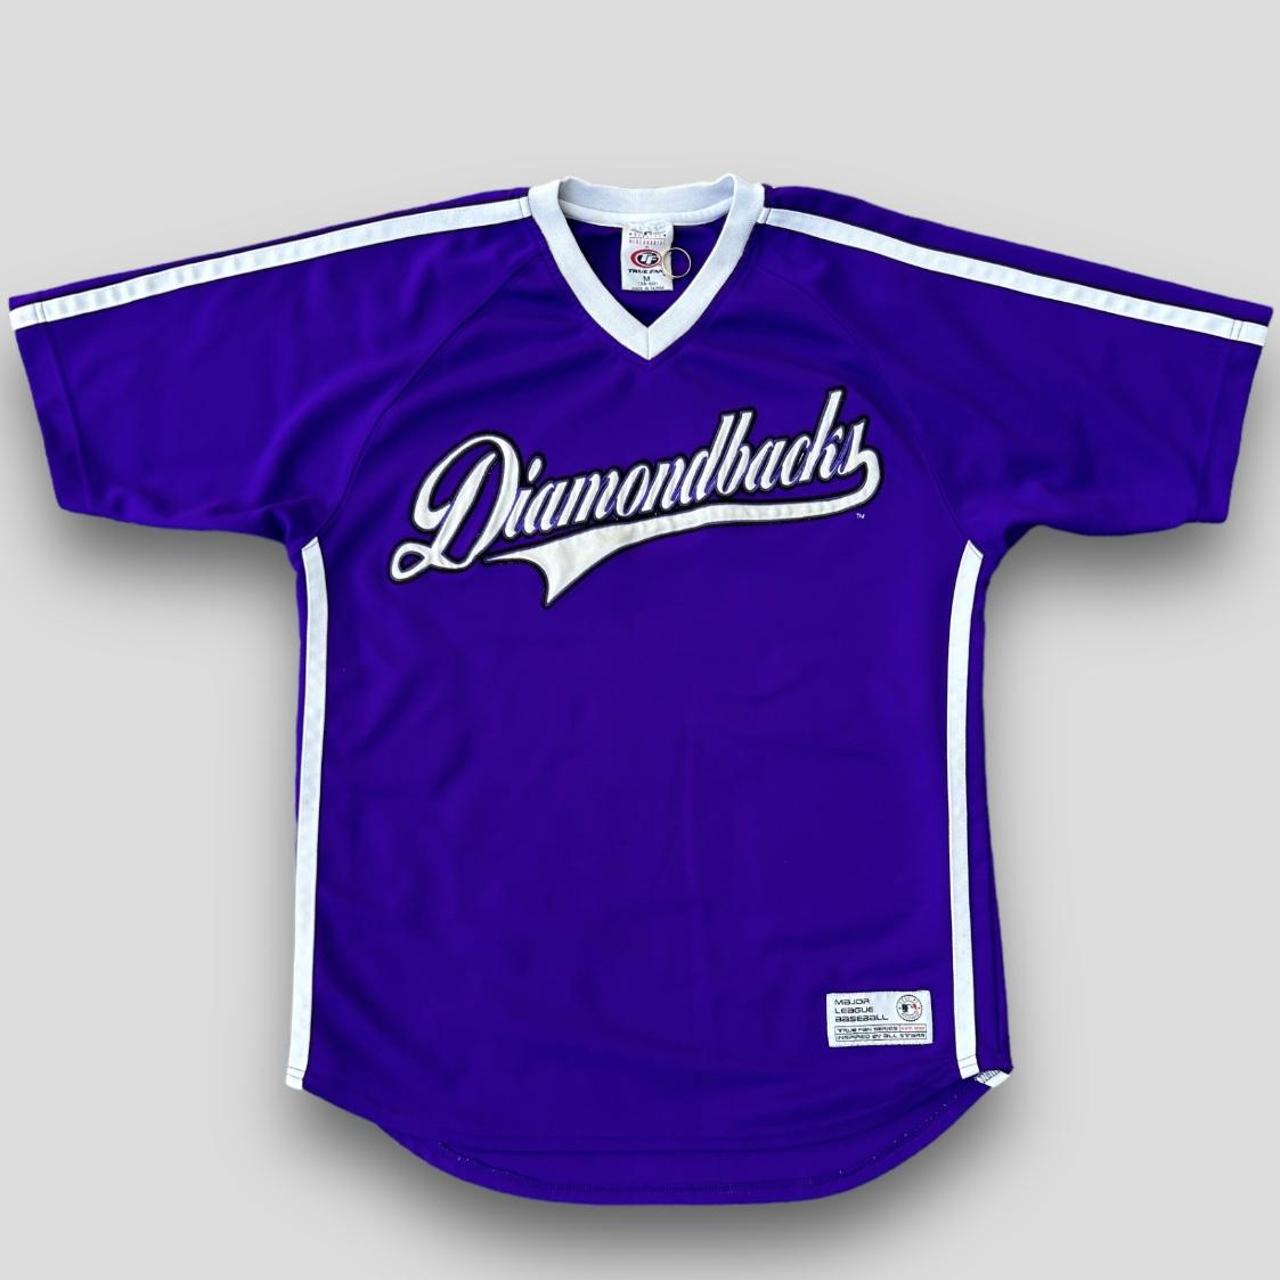 diamondback baseball jersey